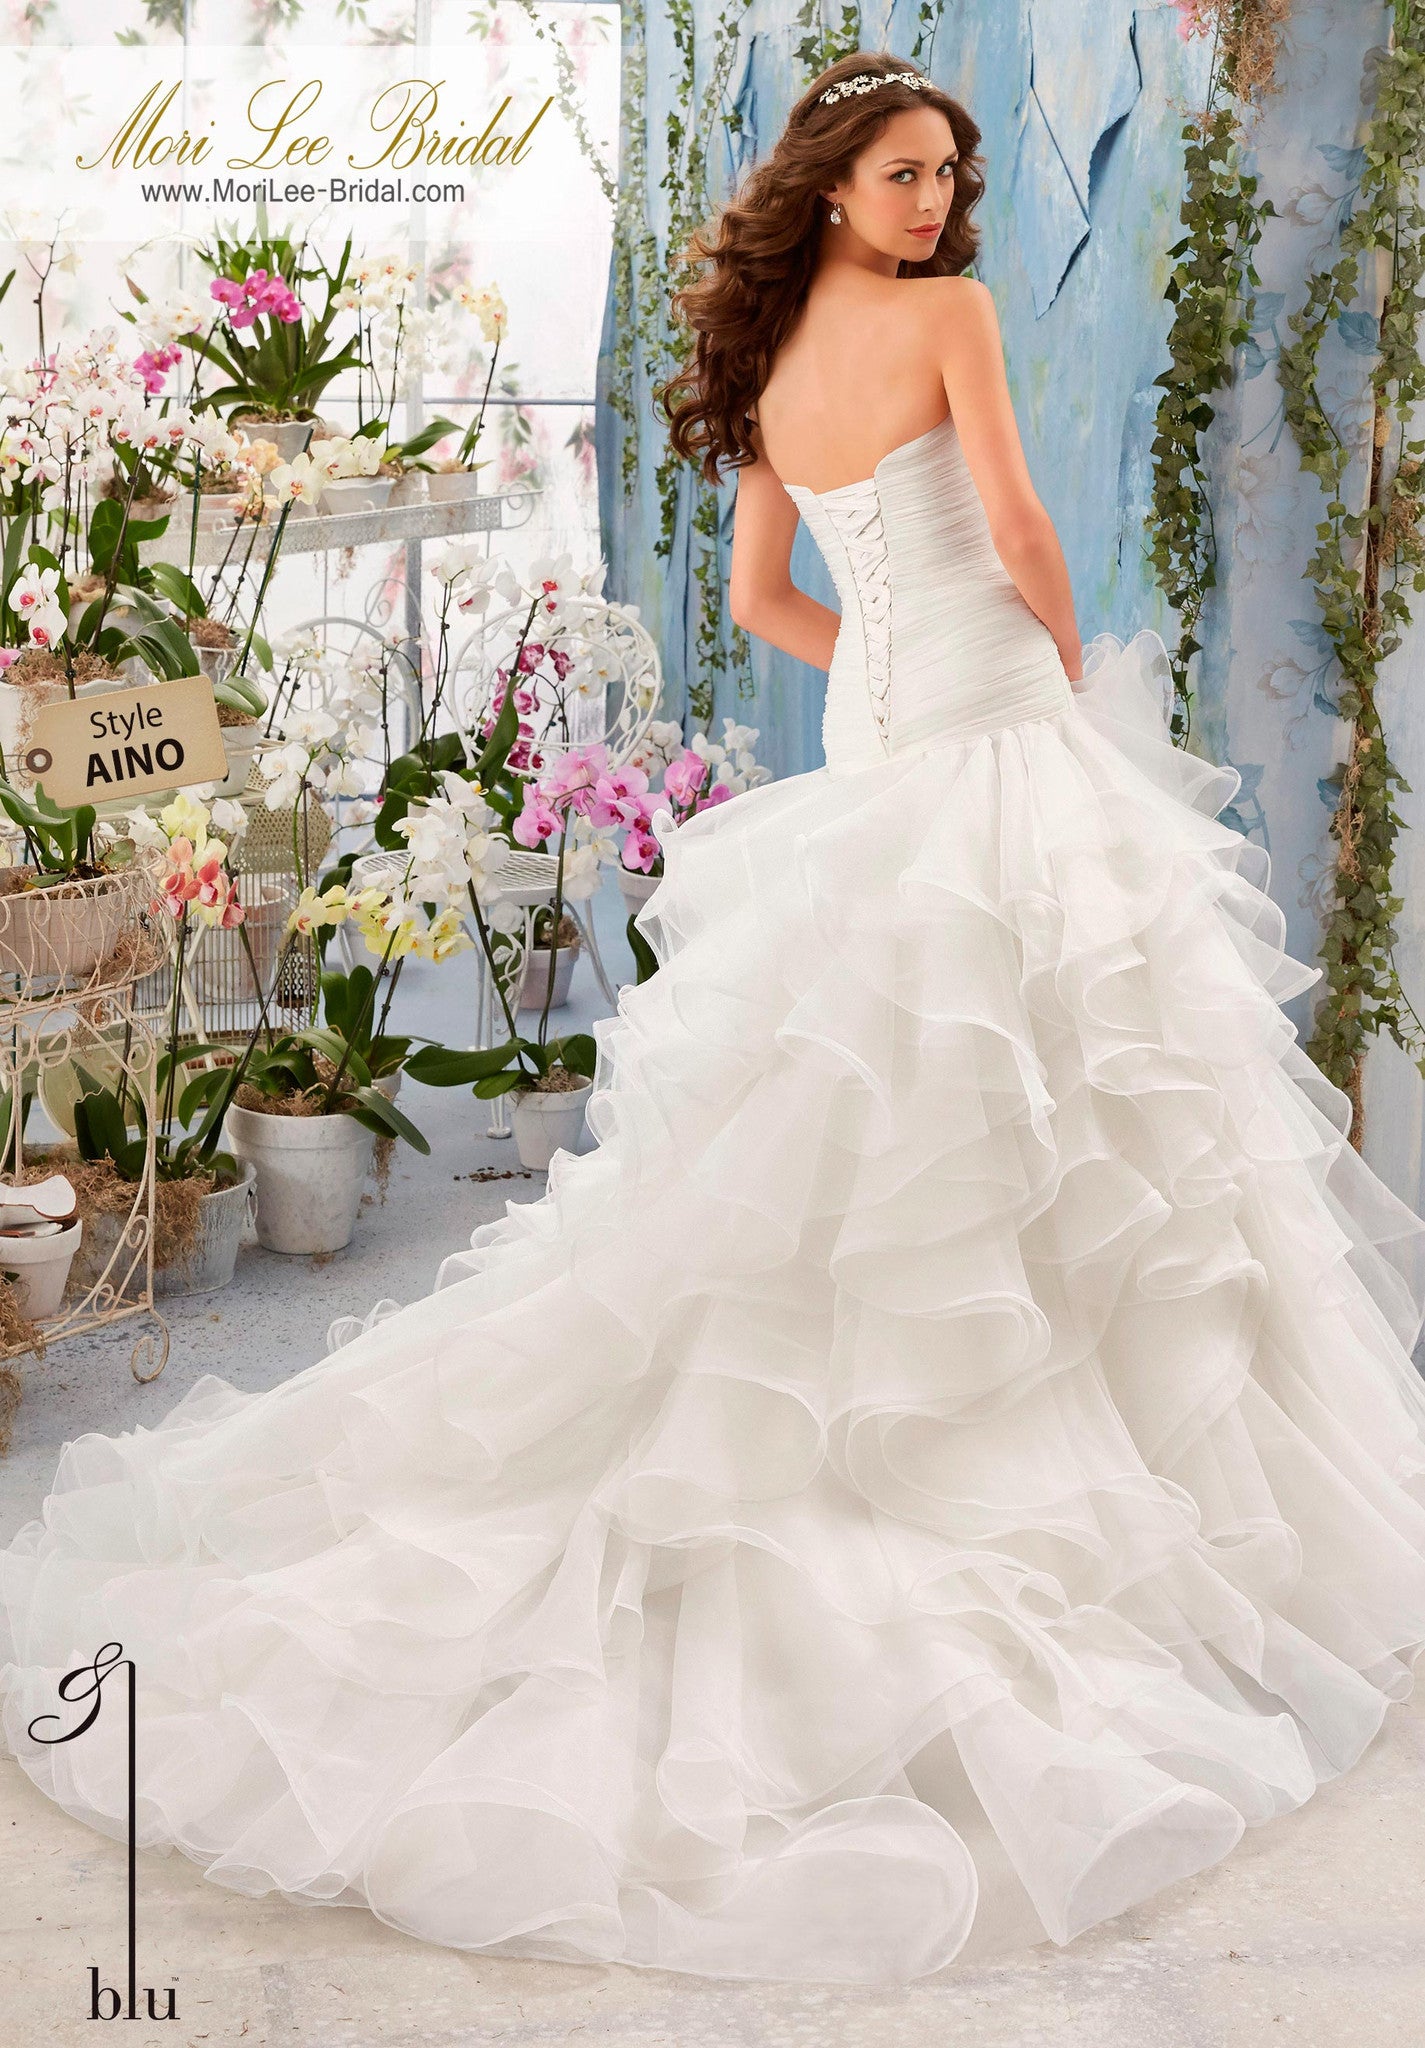 Vestido de novia asimétrico en organza y con drapeado. Sueña contigo misma caminando por el pasillo con el hermoso vestido de novia, hecho con delicados apliques de encaje bordado. AINO*